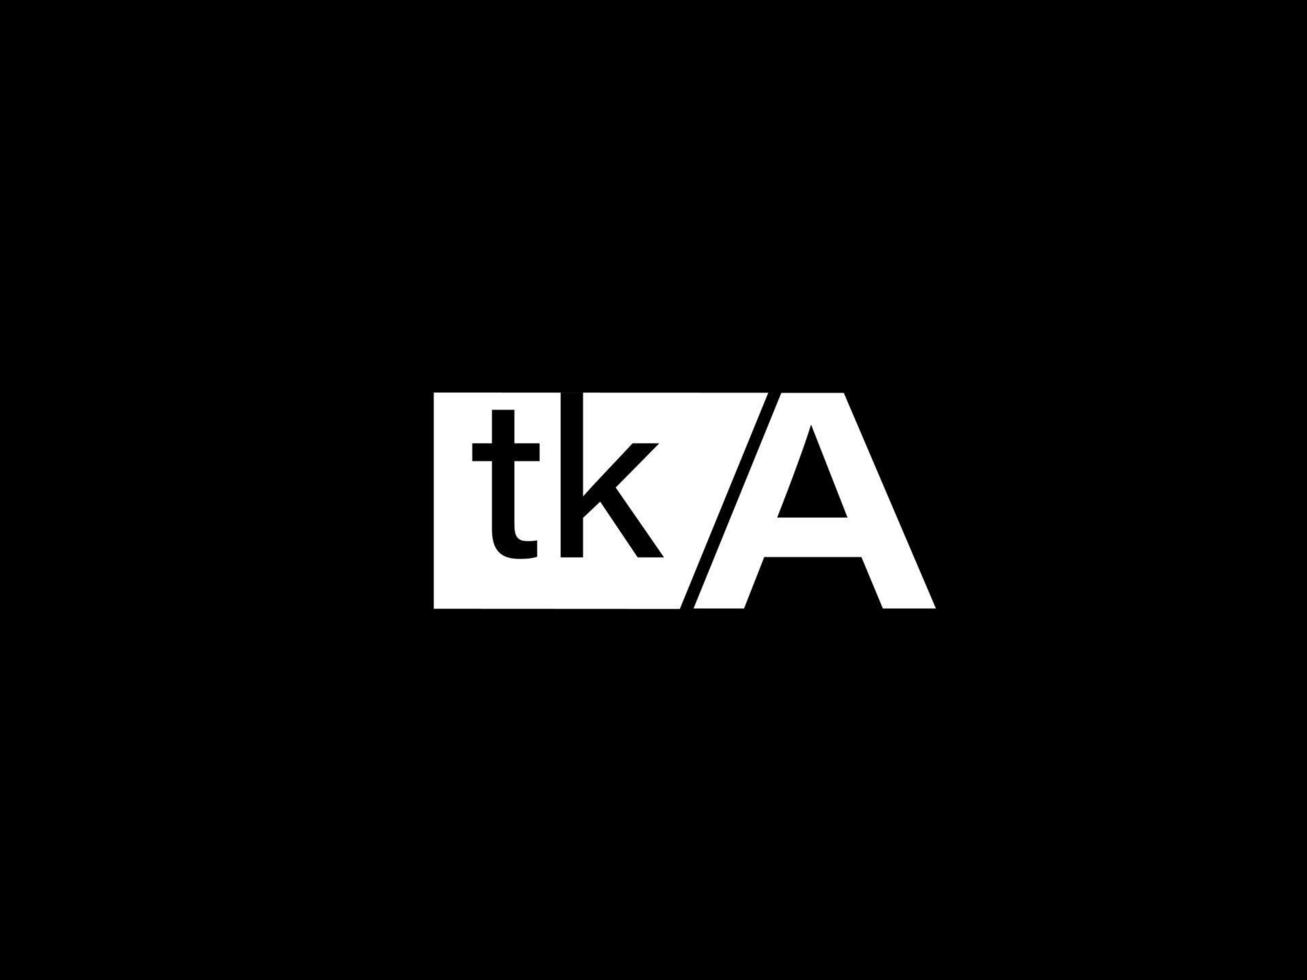 logo tka et art vectoriel de conception graphique, icônes isolées sur fond noir